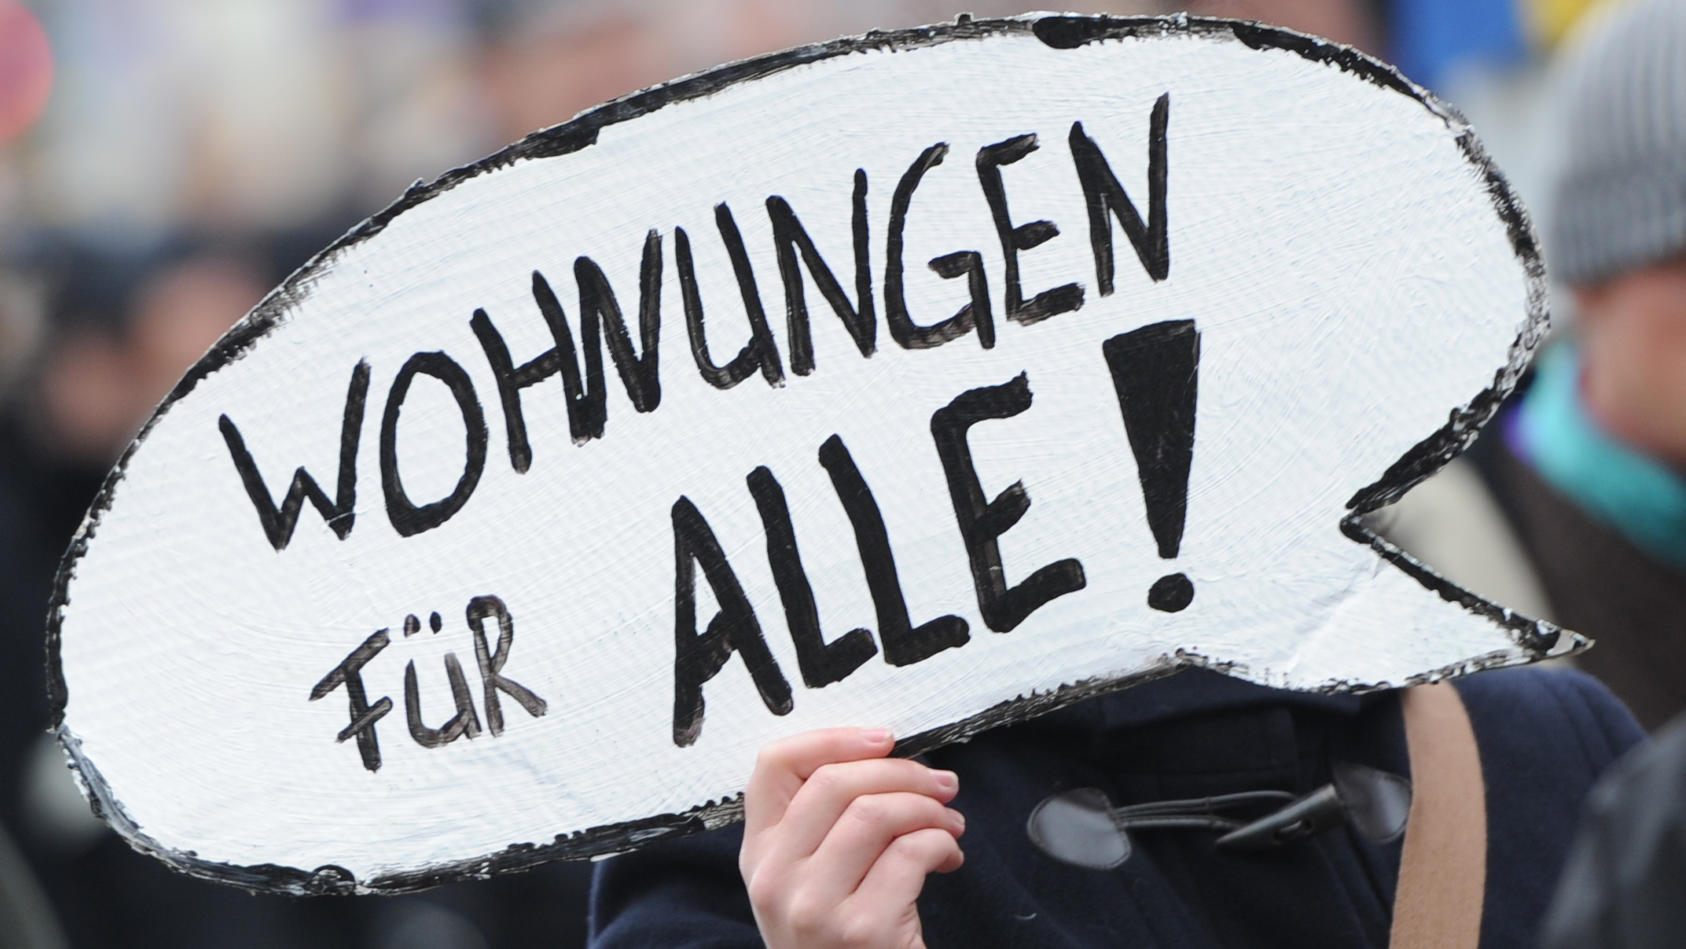 ARCHIV - 10.11.2012, Hamburg: Ein Frau demonstriert zusammen mit knapp 3000 Menschen gegen steigenden Mieten. (zu dpa «Auf dem Weg zu Berliner Verhältnissen? - Vor dem Aktionstag «Mietenwahnsinn stoppen»») Foto: Angelika Warmuth/dpa +++ dpa-Bildfunk 